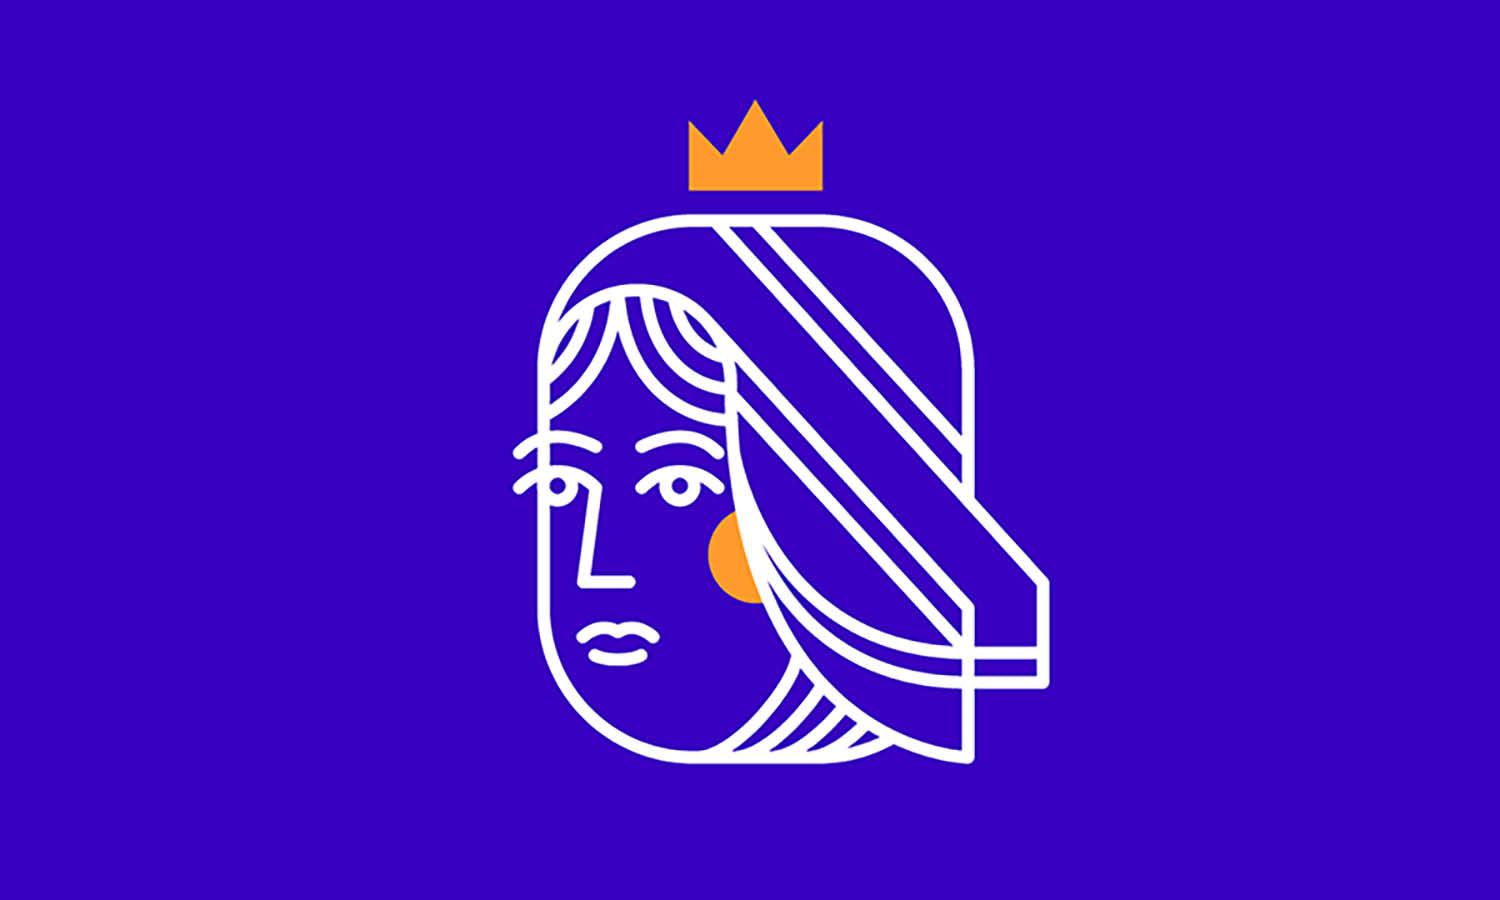 30 Best Queen Logo Design Ideas You Should Check - Kreafolk